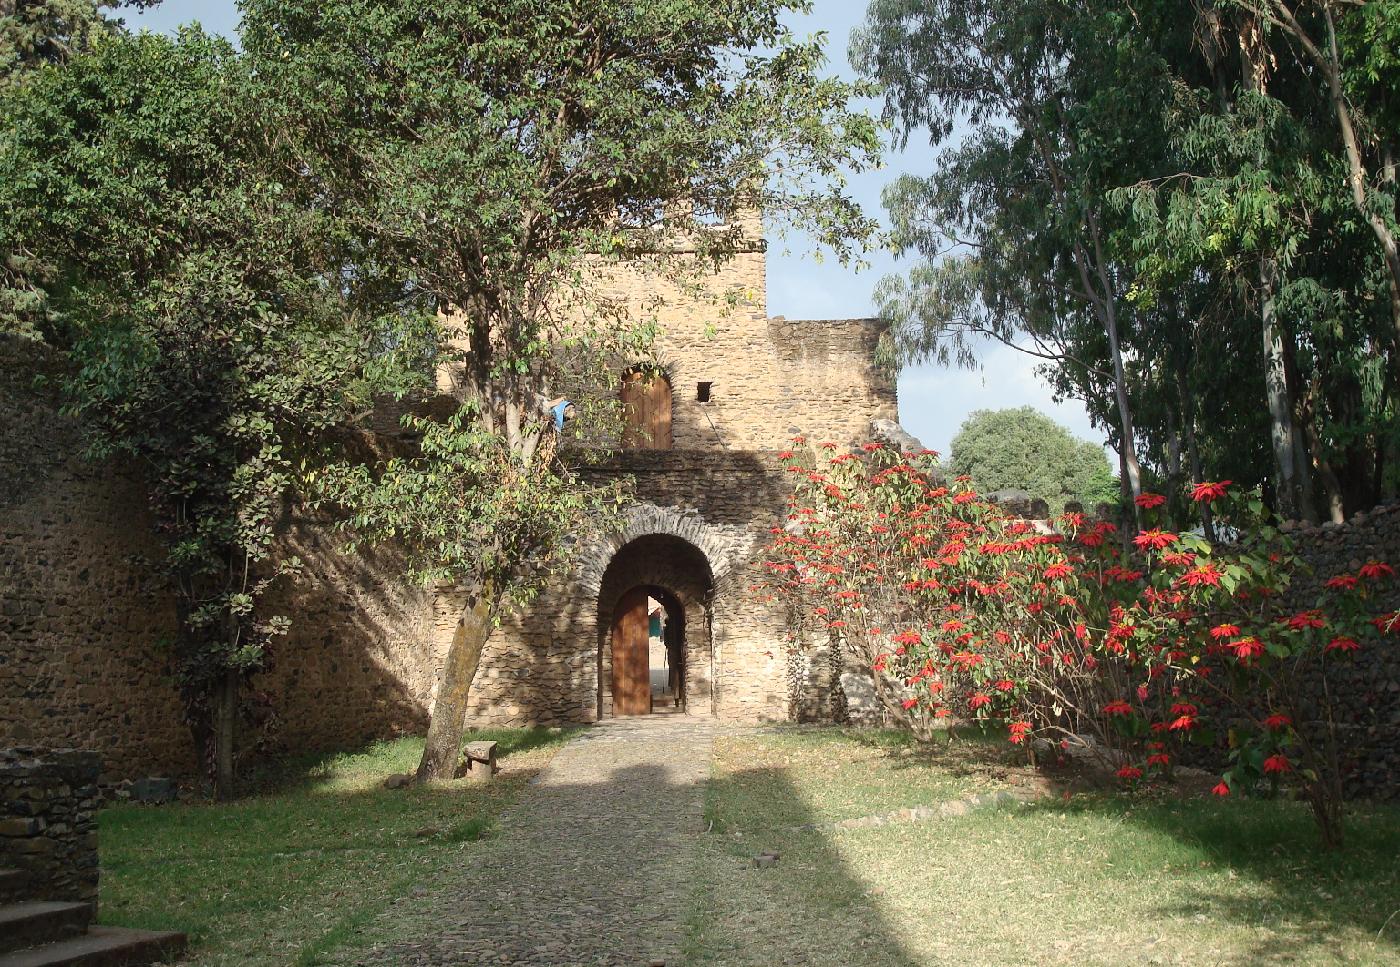 DSC033590.jpg - Alle fleurie de Poinsettia et porte de la Cit impriale de Gondar